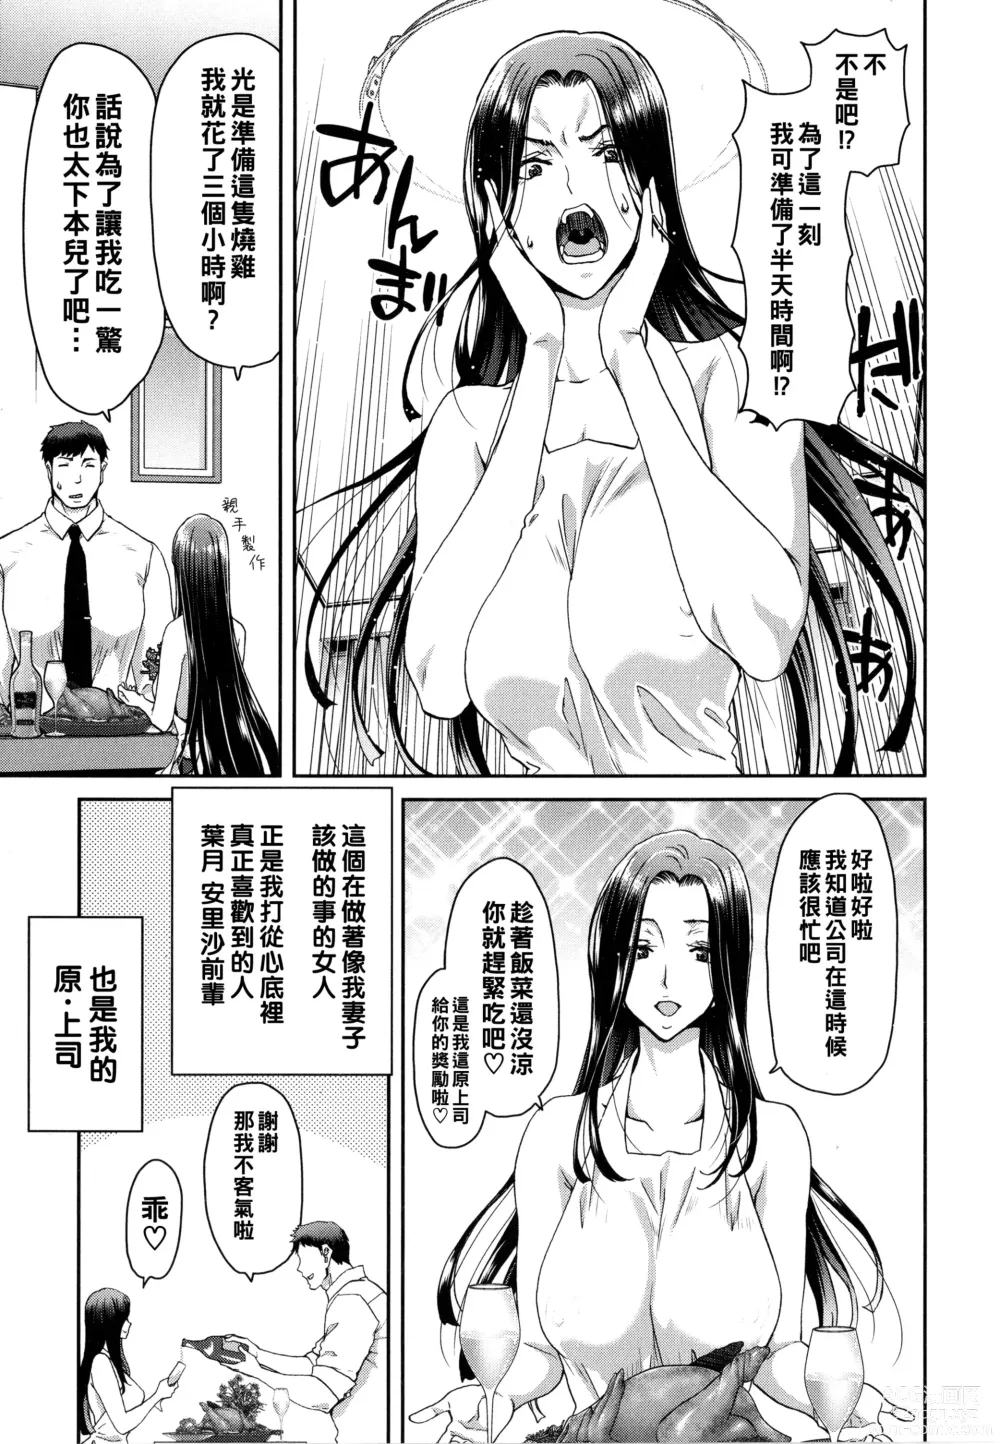 Page 7 of manga Iede Onna o Hirottara - When I picked up a runaway girl. + Melonbooks Gentei Tokuten   Otona no Iede Gojitsudan Sono Ato no Arisa to Akira